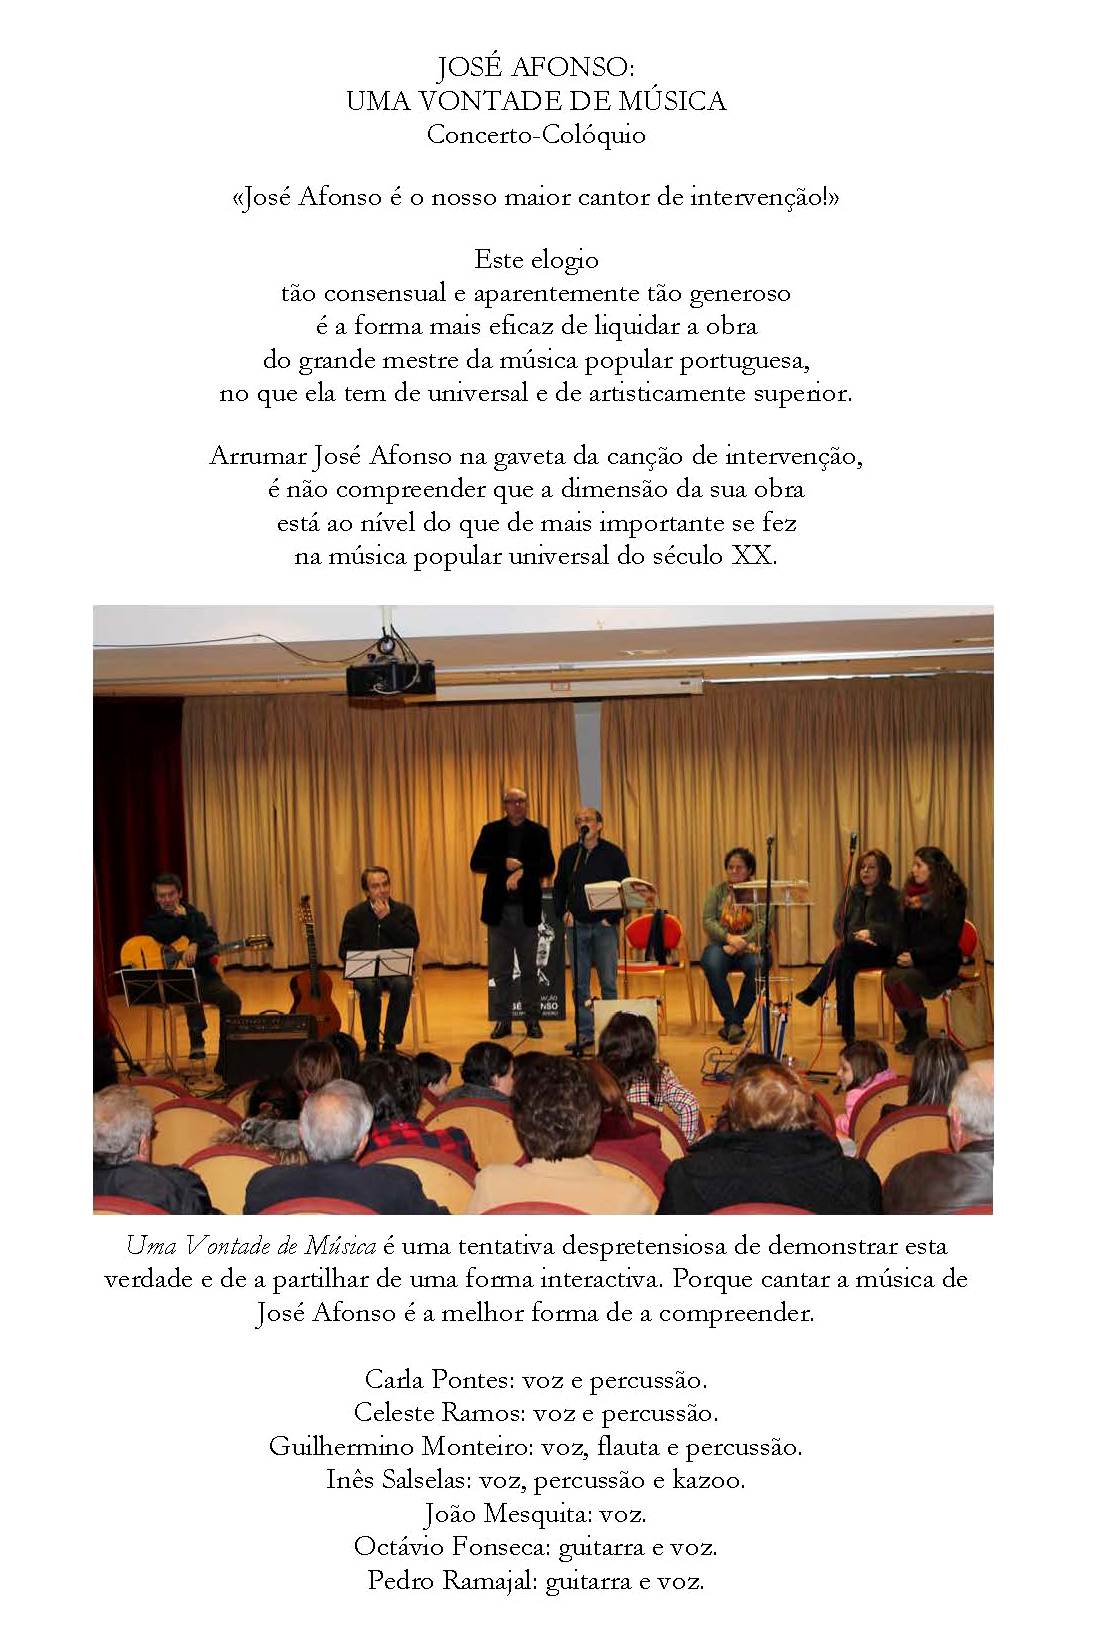 Uma Vontade de Música - Press Release 2013-12-07